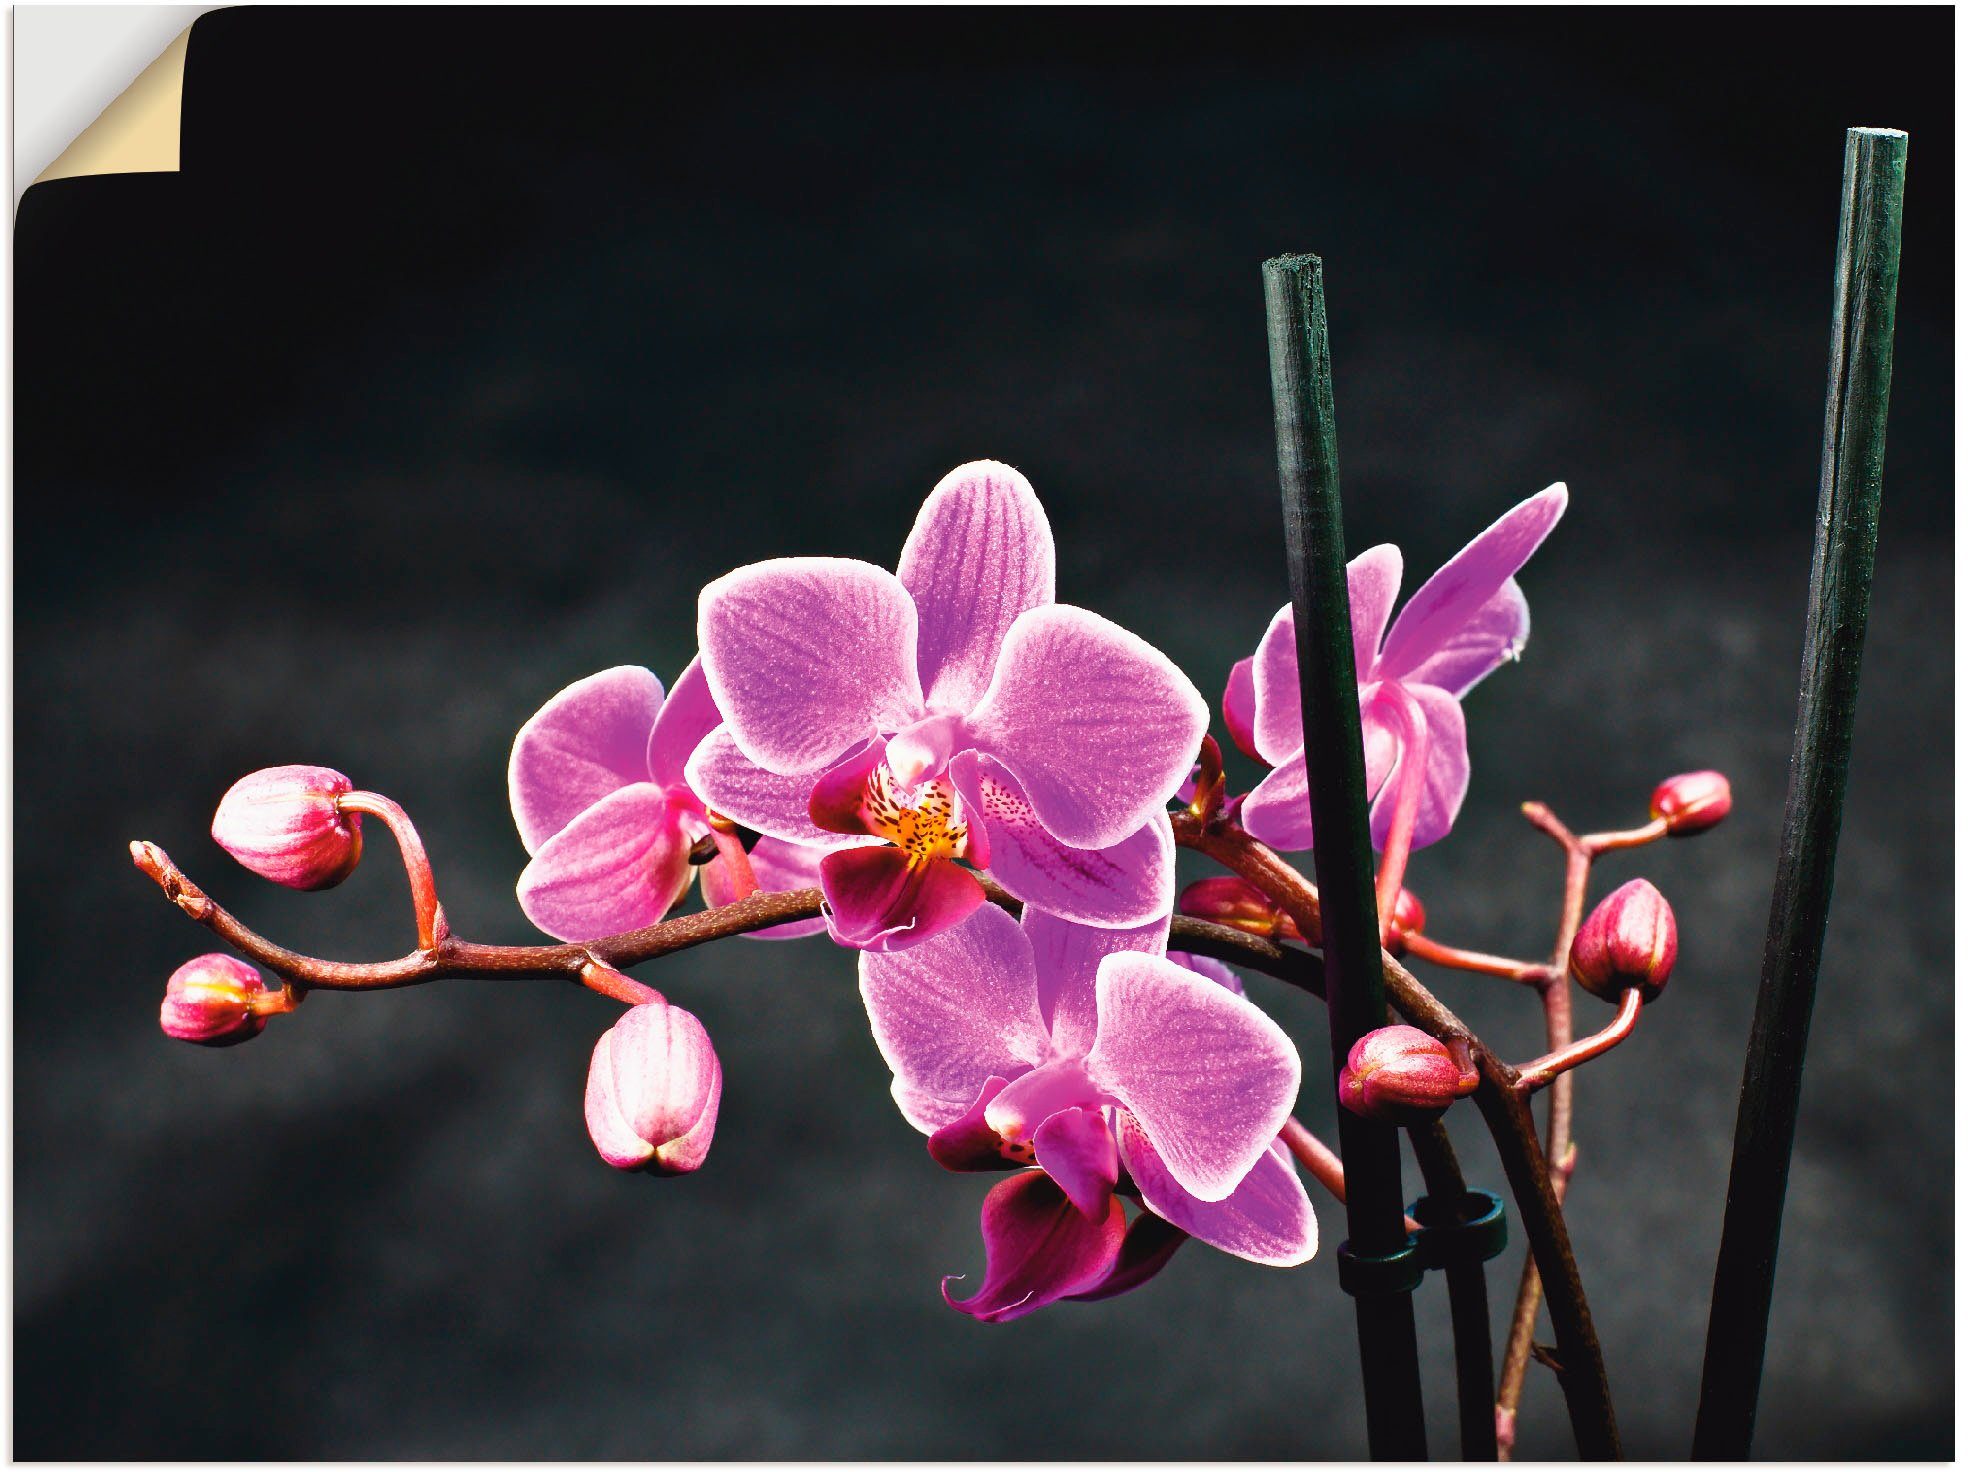 Artland Artprint Een orchidee voor een zwarte achtergrond in vele afmetingen & productsoorten -artprint op linnen, poster, muursticker / wandfolie ook geschikt voor de badkamer (1